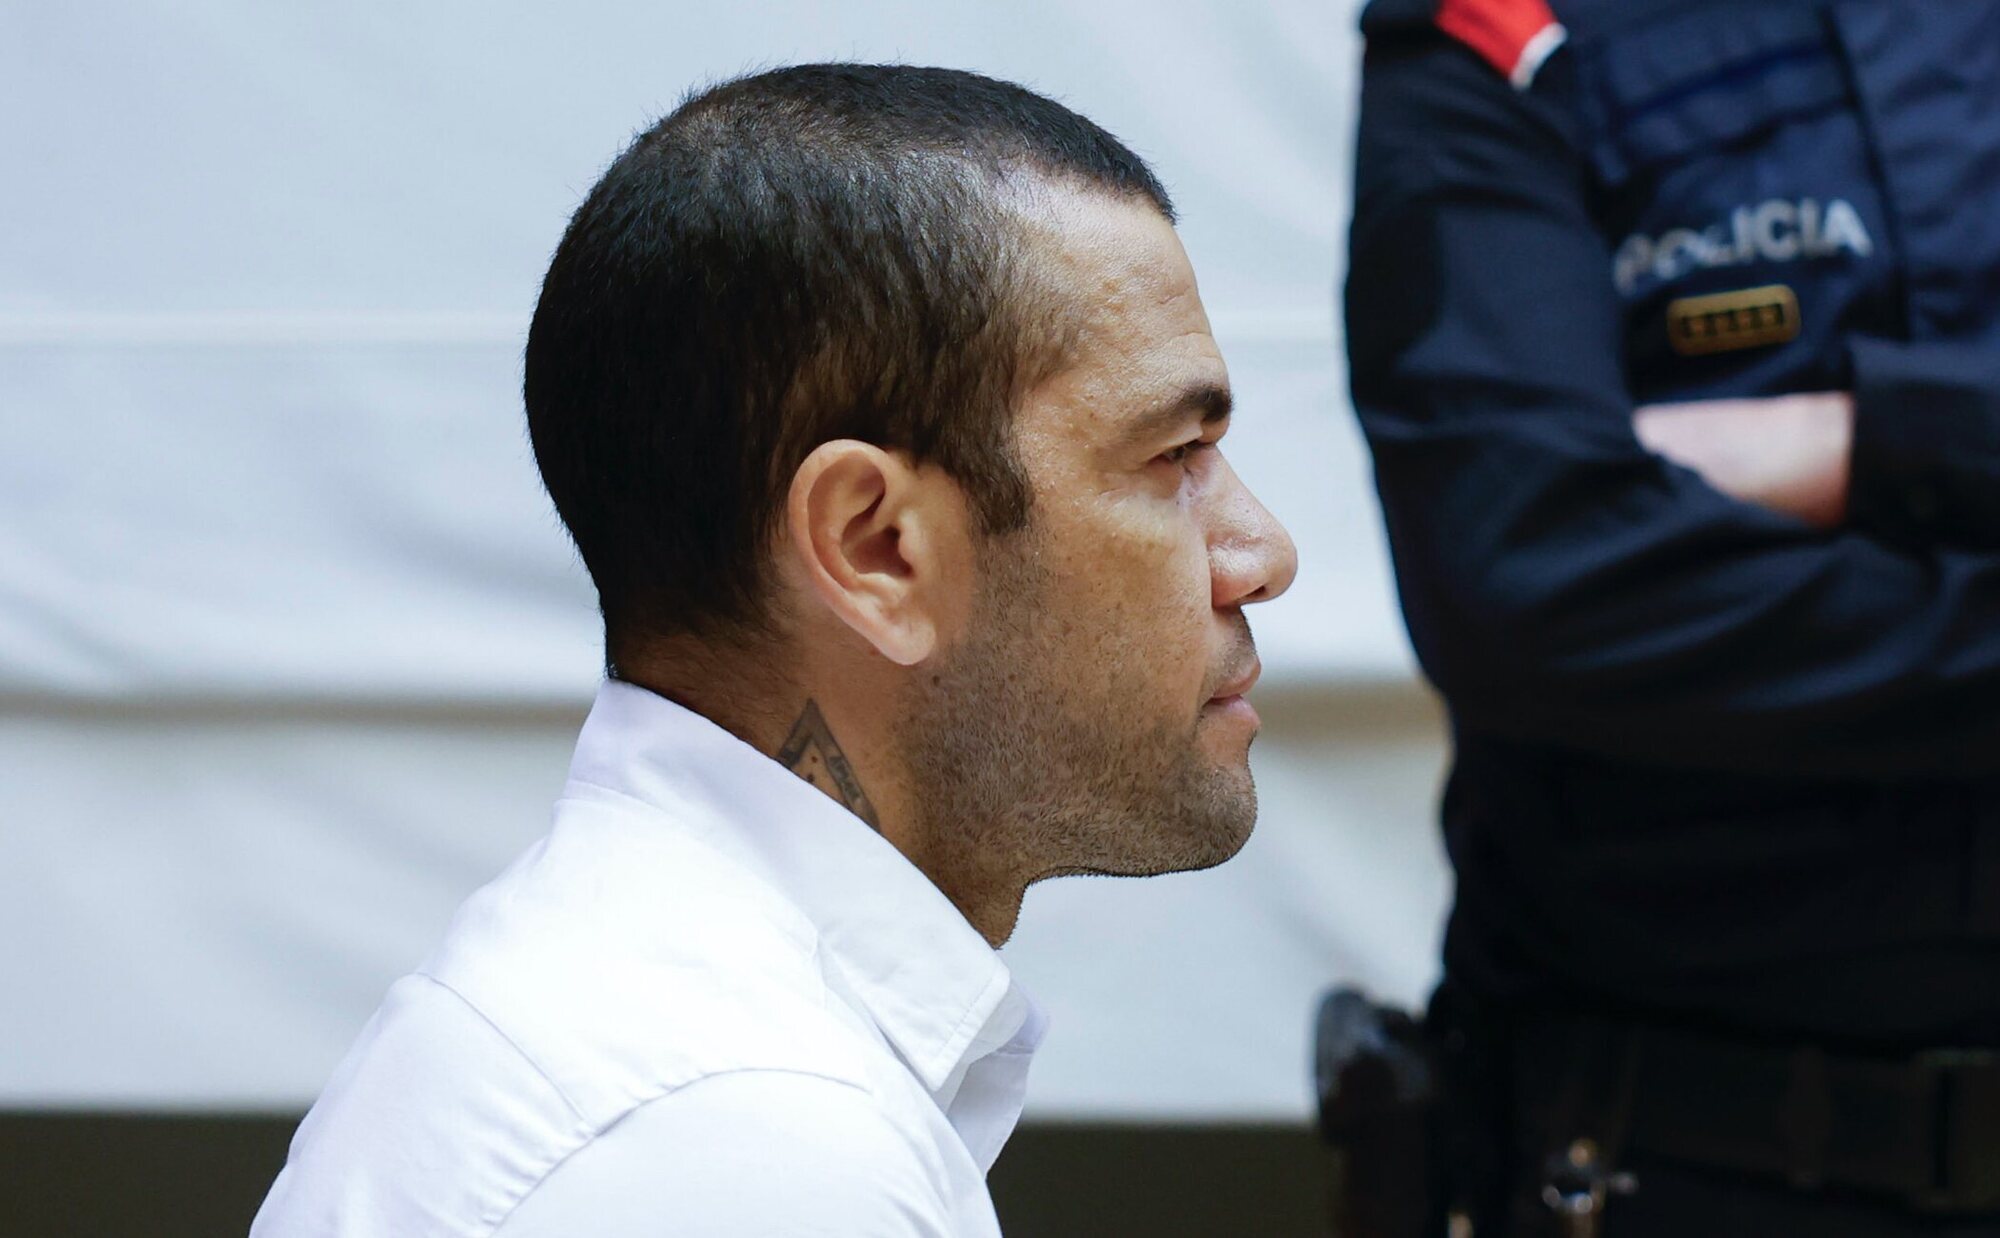 La defensa de Alves solicita anular el juicio por el "juicio paralelo en los medios" que vulneran su presunción de inocencia